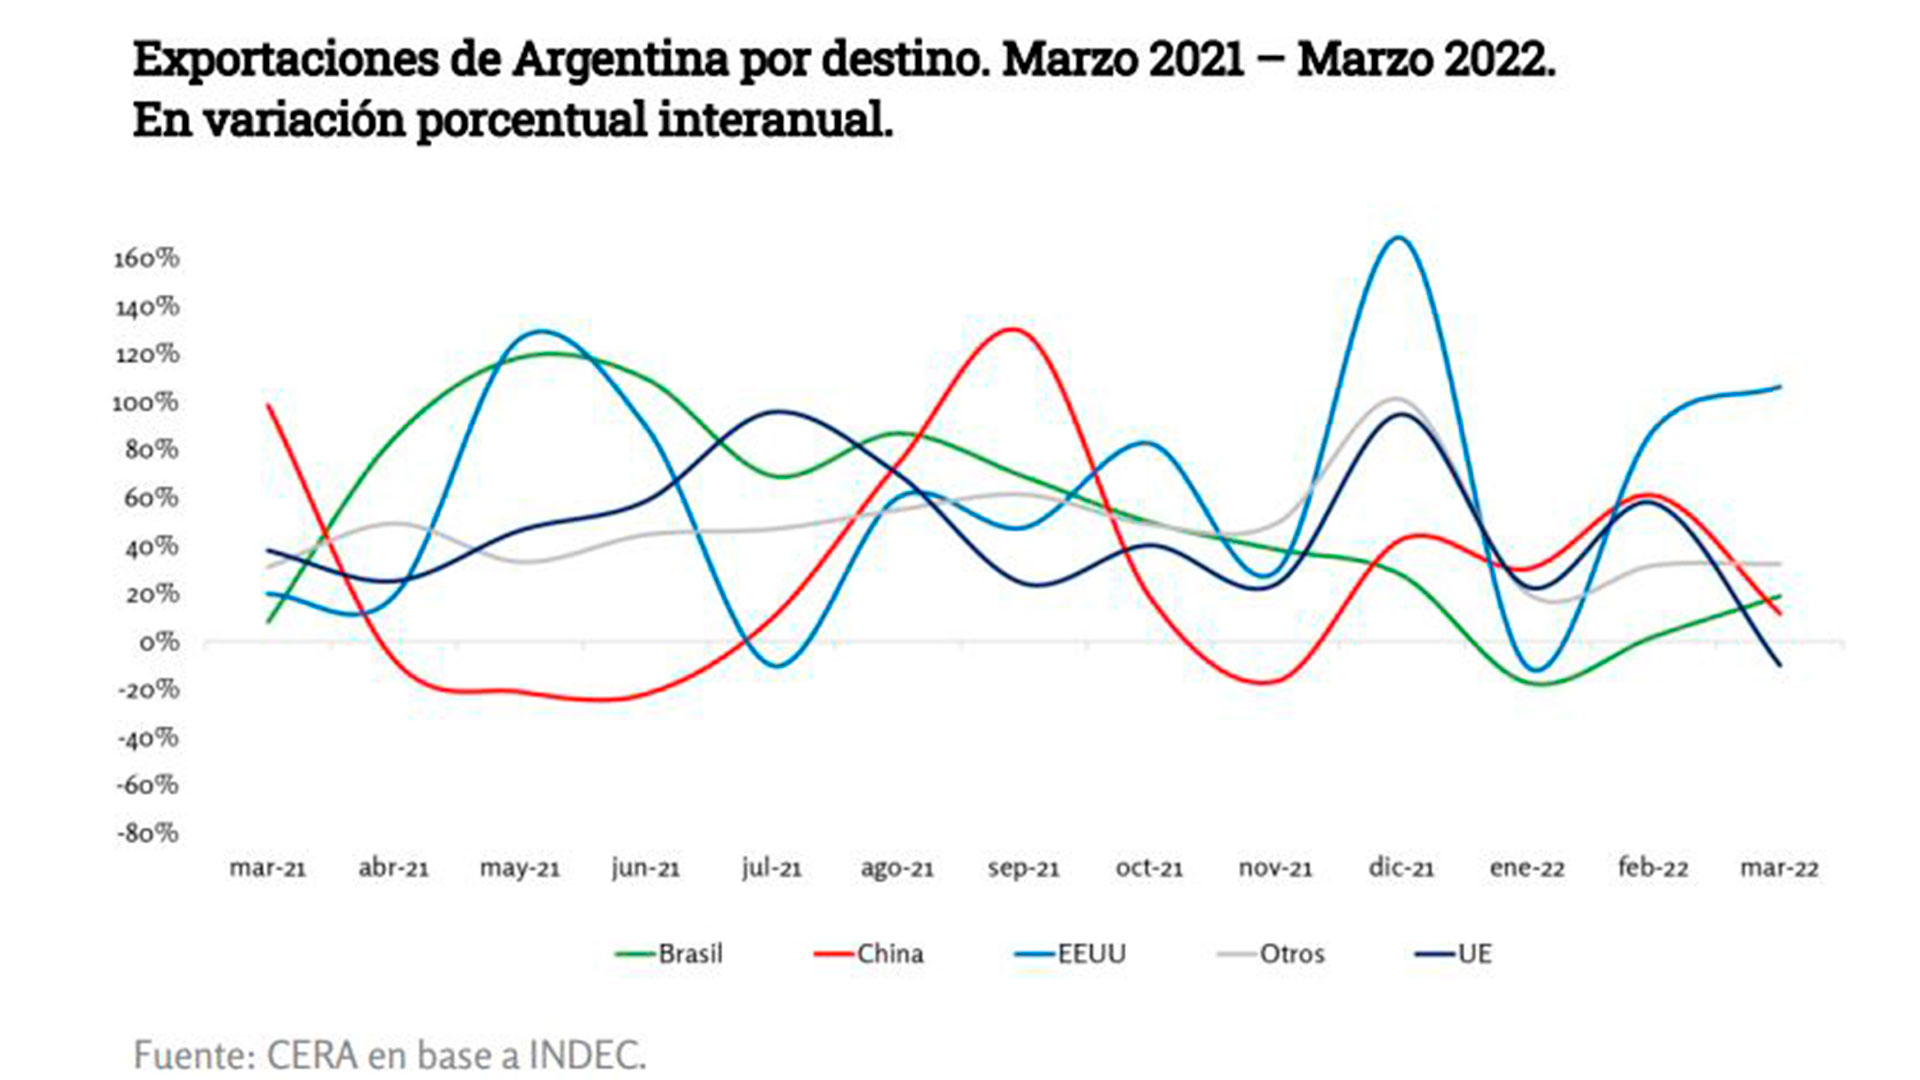 Otro gráfico del informe de CERA muestra que China fue el destino de las exportaciones argentinas que más se debilitó en los últimos 12 meses